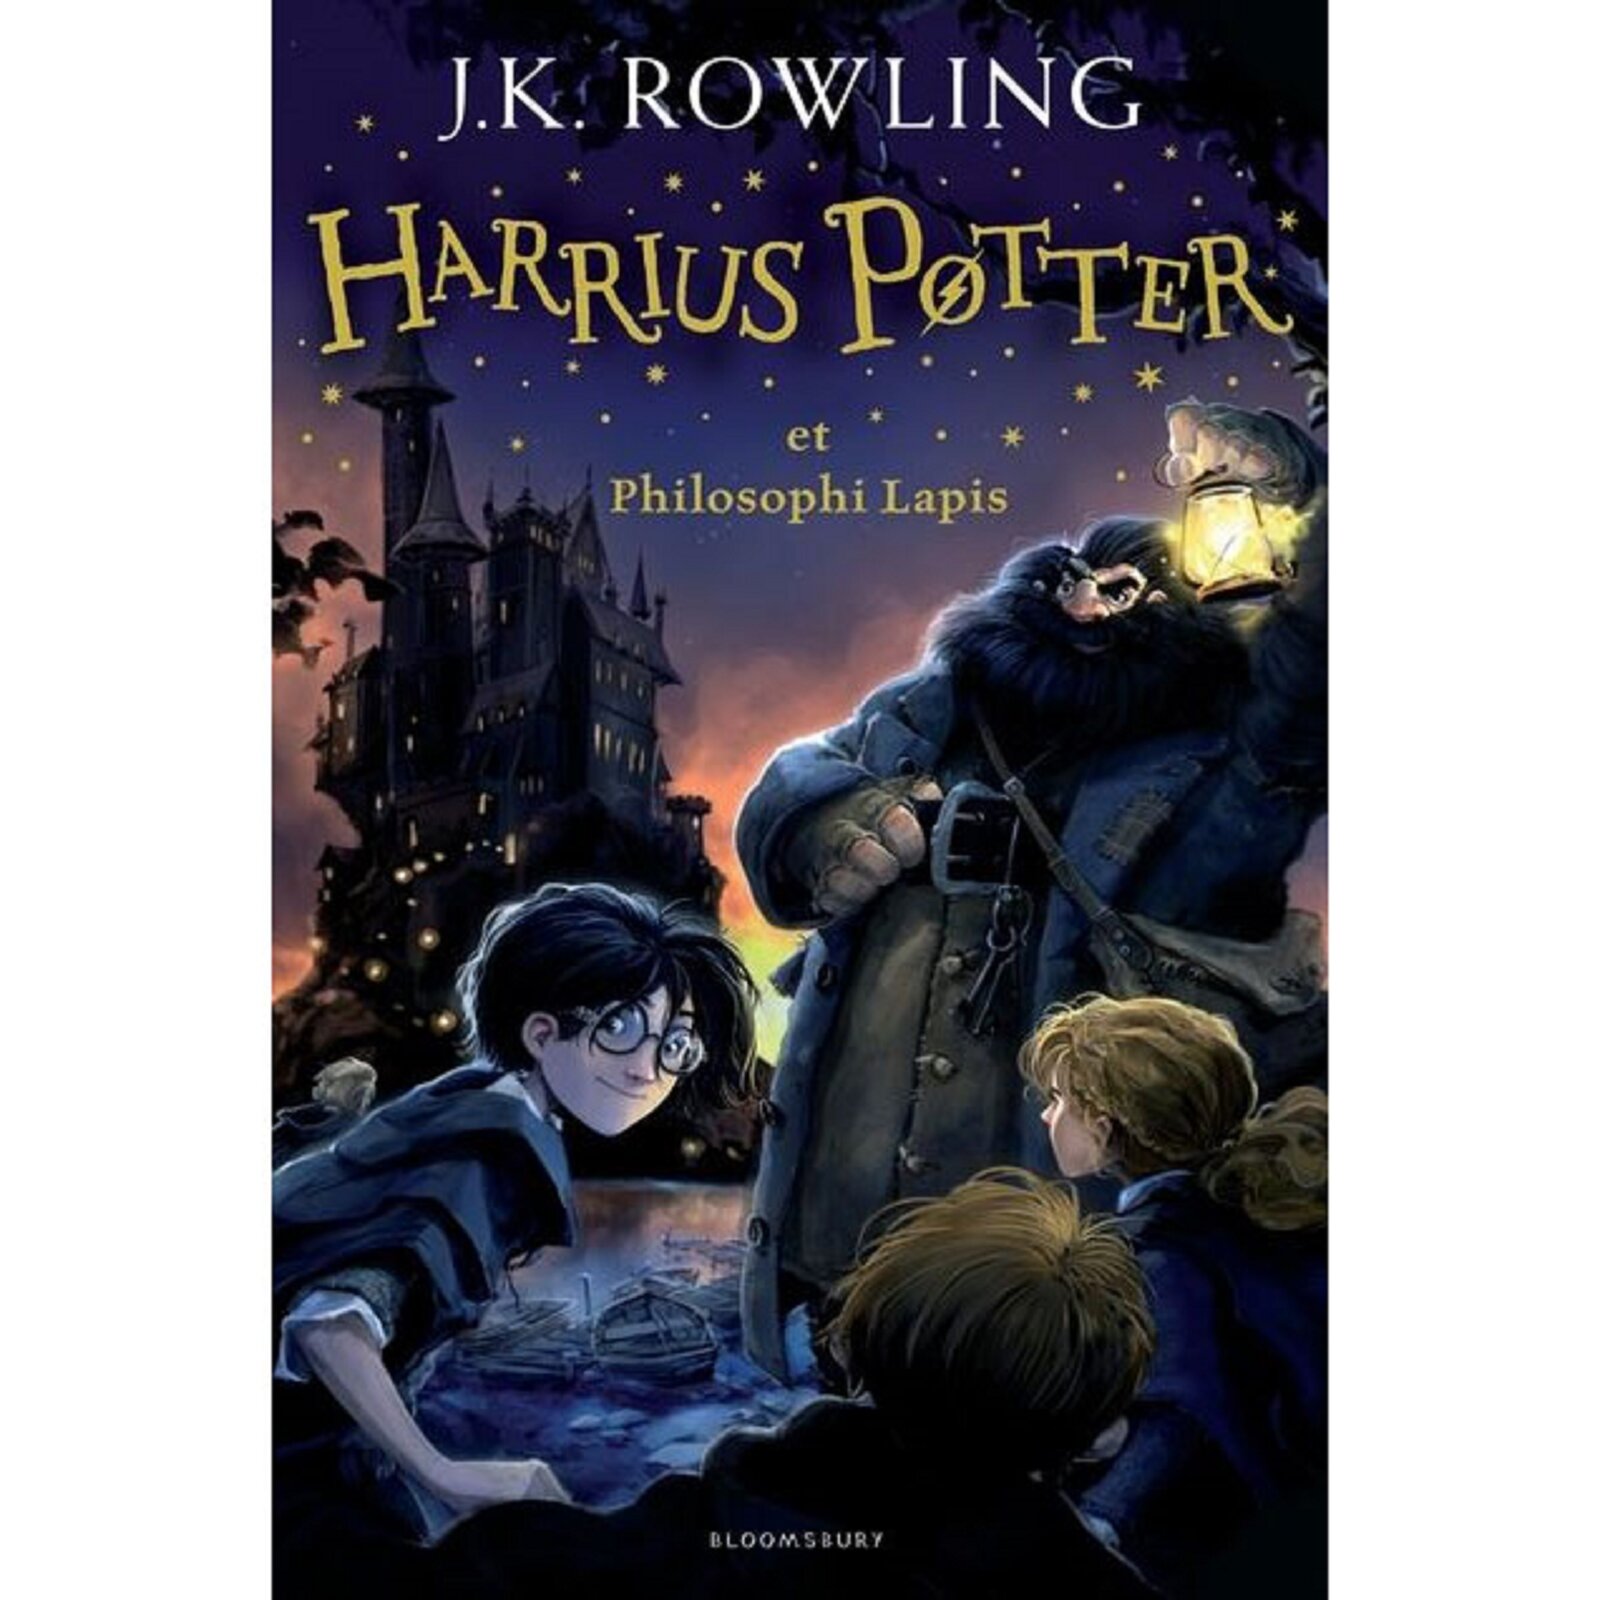 Ilustracja przedstawia stronę tytułową książki J. K. Rowling pod tytułem „Harry Potter i kamień filozoficzny” przetłumaczoną na język łaciński. Strona tytułowa zawiera (od samej góry) imię i nazwisko autorki oraz tytuł przetłumaczony na język łaciński – HARRIUS POTTER ET PHILOSOPHI LAPIS. 	Pod tytułem znajduje się ilustracja, na której przedstawiono postać Harrego Pottera, Rona, Hermiony oraz Hagrida. Harry przedstawiony jest jako mały chłopiec o kruczo czarnych włosach i w czarnej pelerynie. Obok Harrego widoczne są plecy Rona oraz Hermiony. Nad całą trójką czuwa Hagrid – wysoki mężczyzna o bujnej fryzurze i zaroście. Hagrid ubrany jest w granatowy długi płaszcz oraz ciemną koszulę. W tle widoczny jest Hogwarth – szkoła magii. 